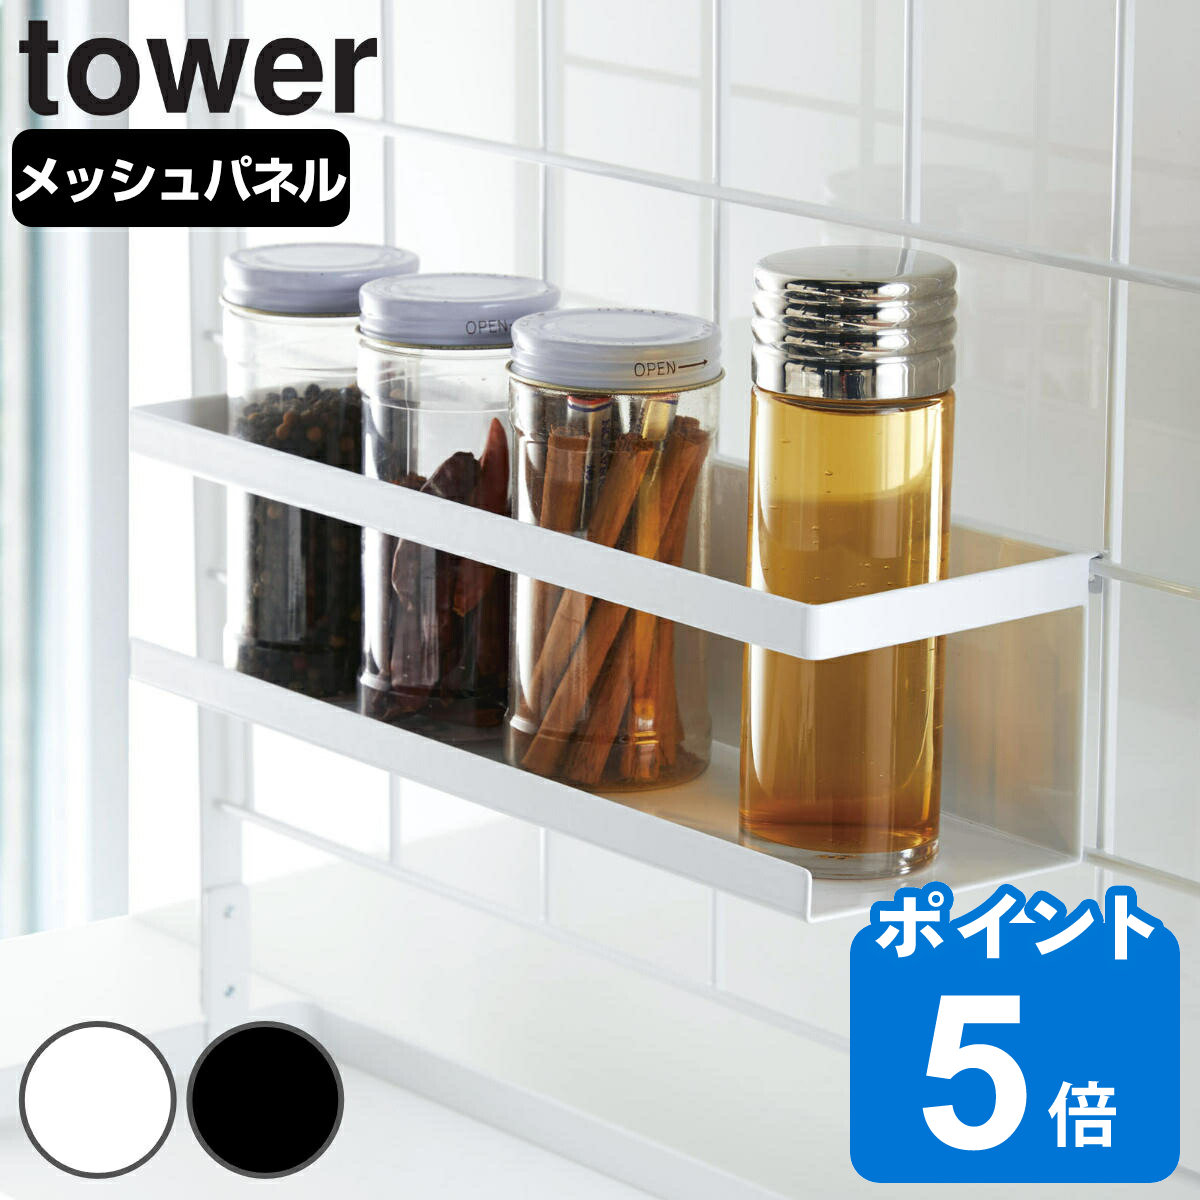 tower 自立式メッシュパネル用 ワイドラック タワー 対応パーツ